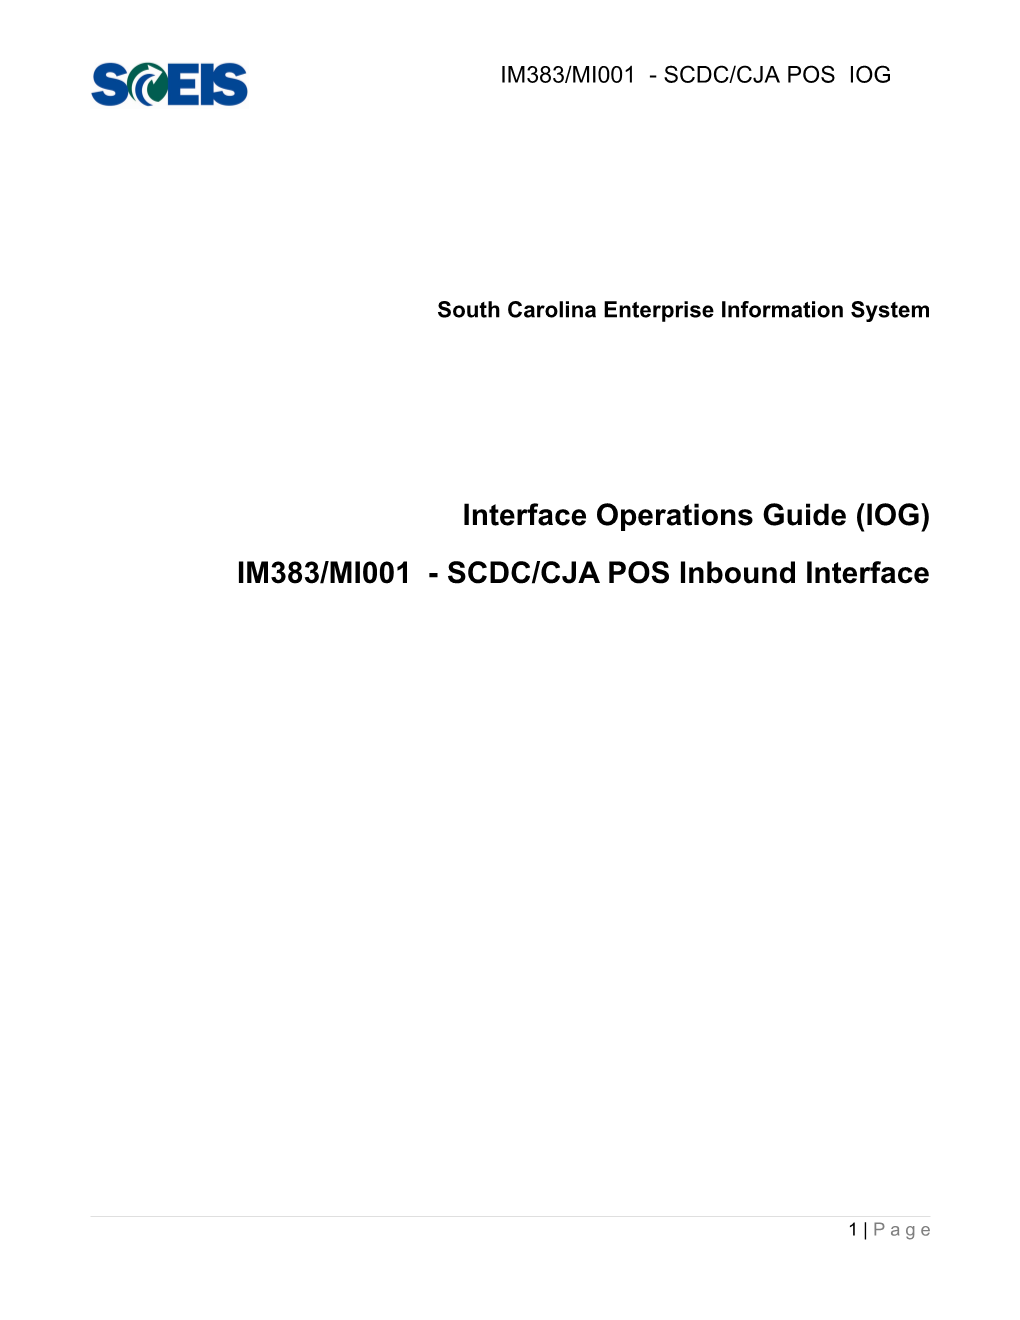 IM383 IOG - SCDC Canteen CJA POS - Inbound Interface V1